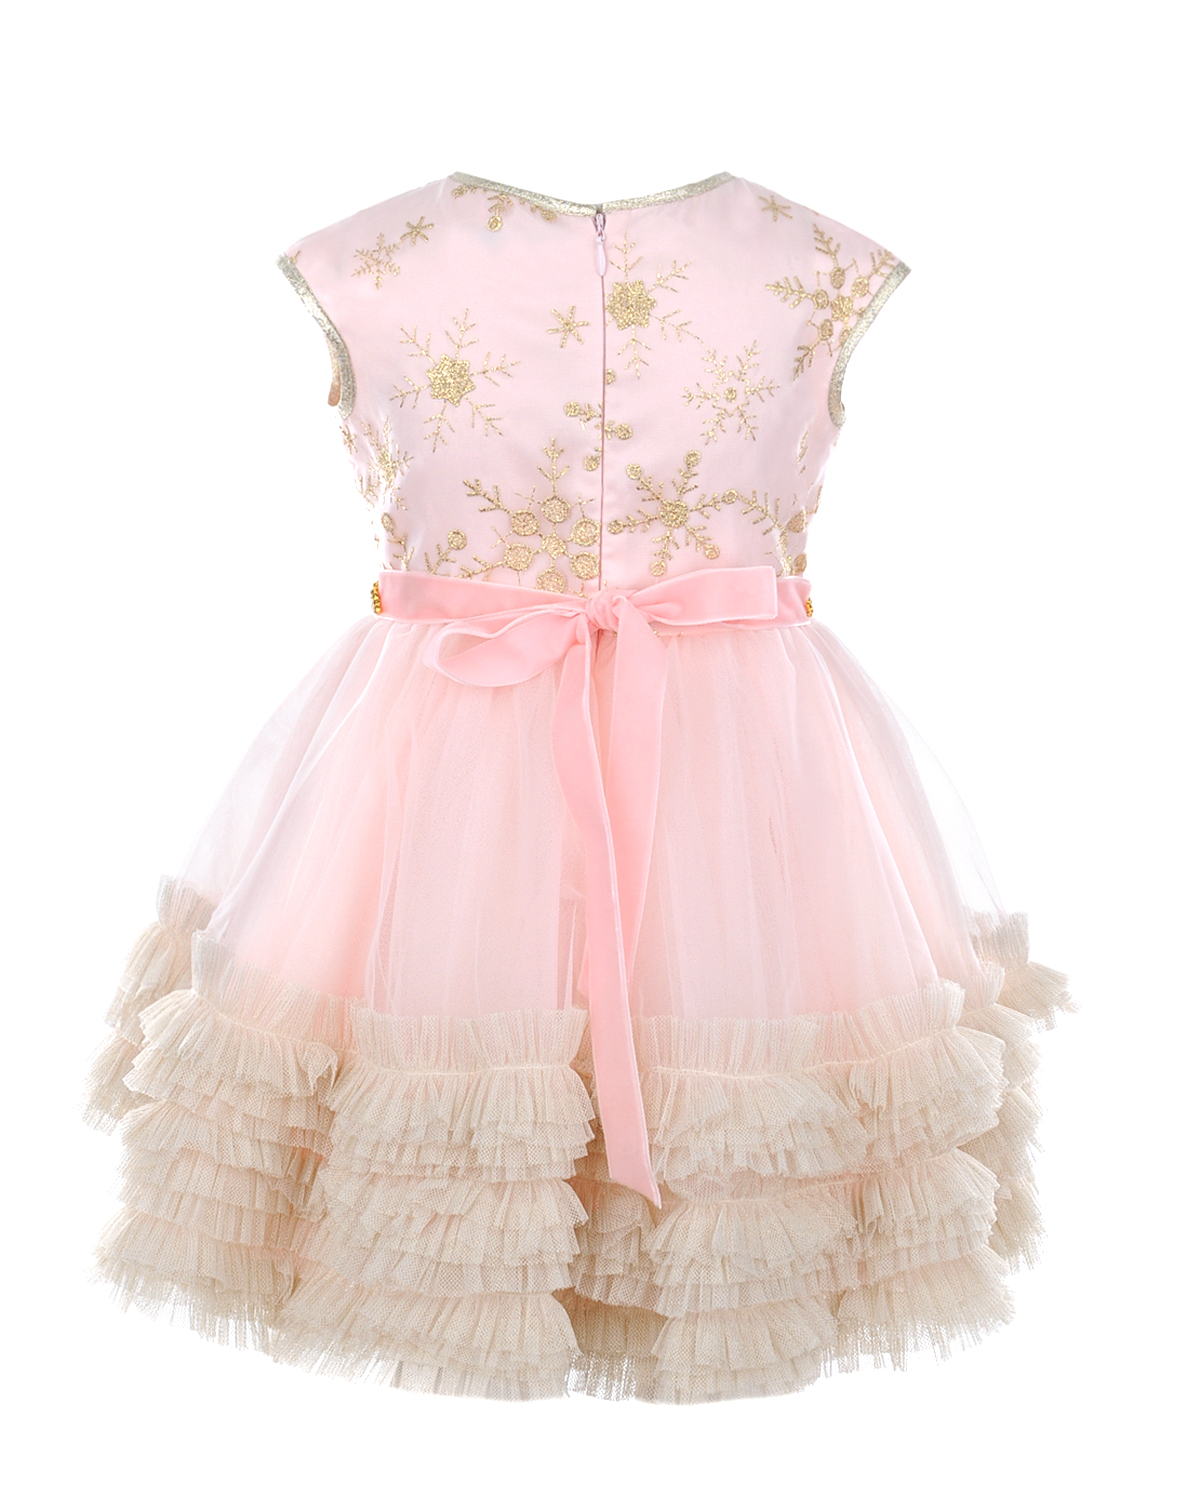 Розовое платье с многоярусной юбкой Lesy детское - фото 2